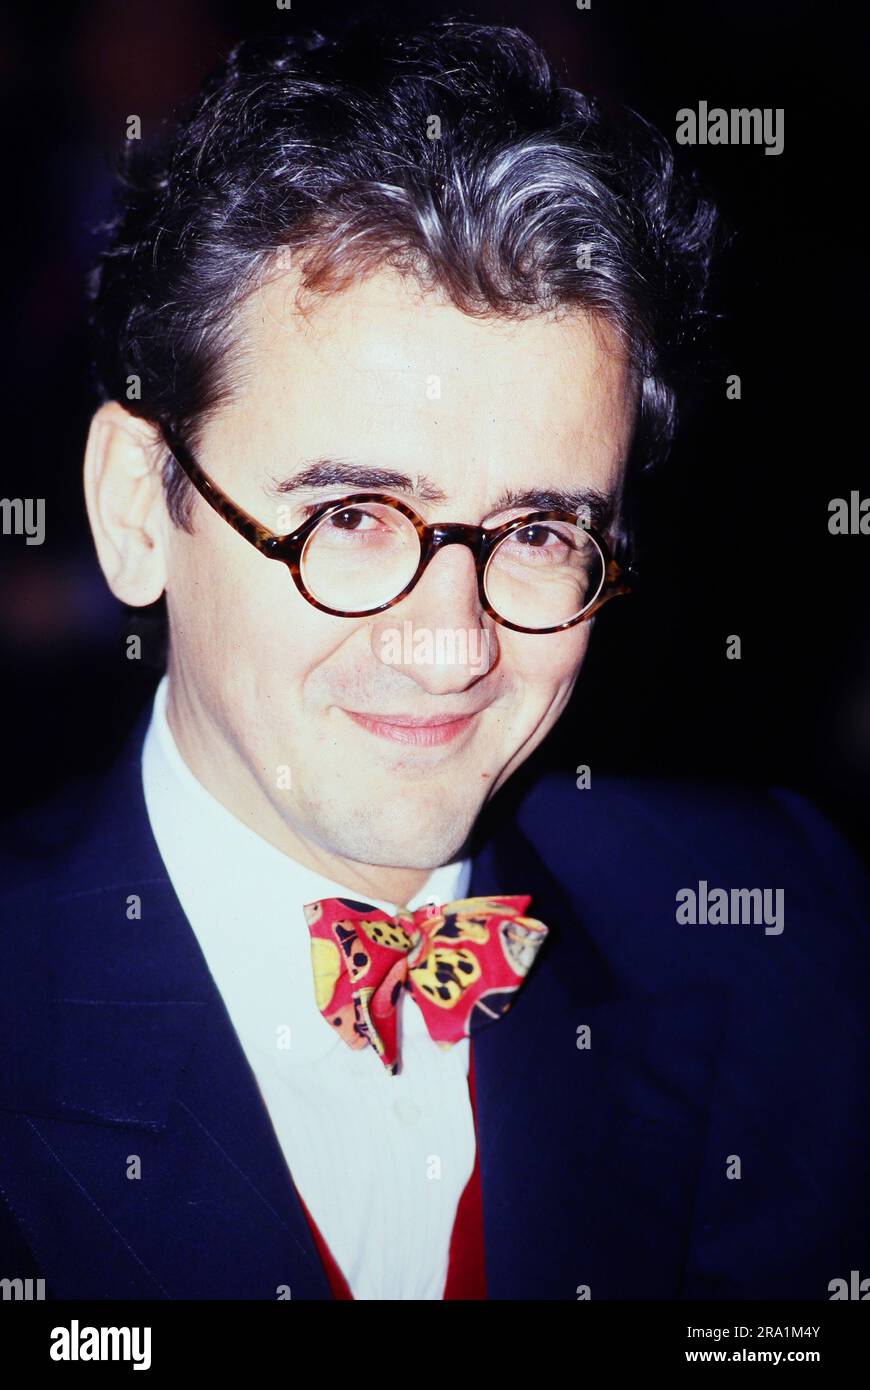 Andreas Leo Lukoschik, deutscher Fernsehmoderator und Schauspieler, Deutschland um 1991. Stock Photo